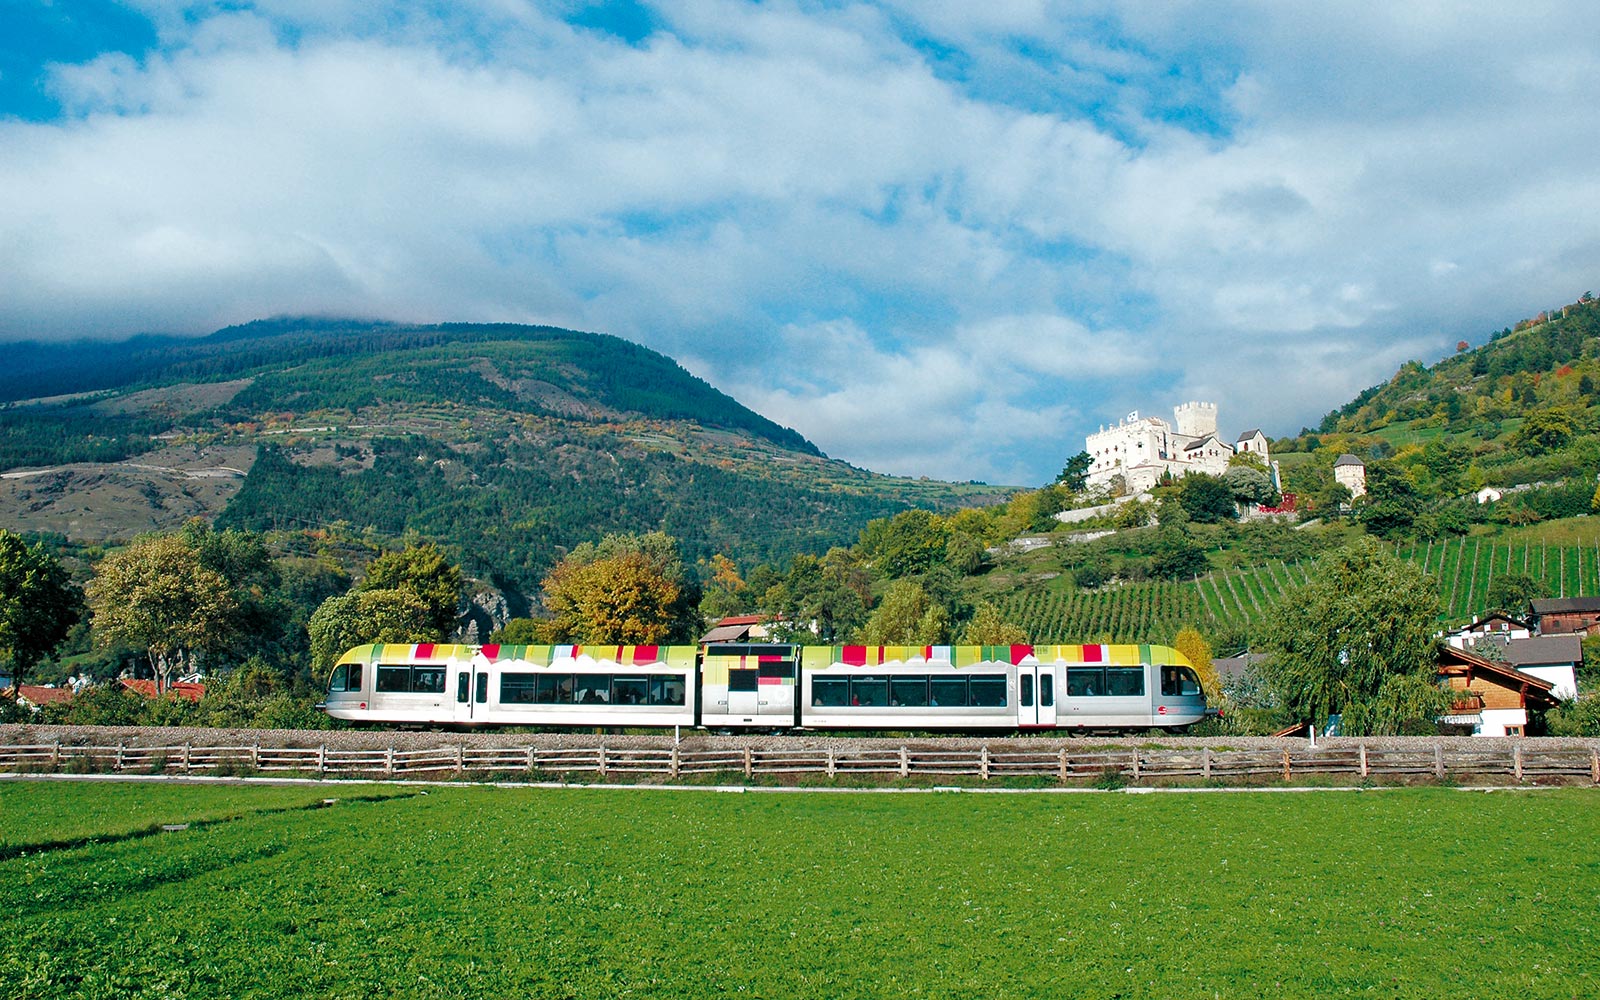 The Vinschgau Valley Train